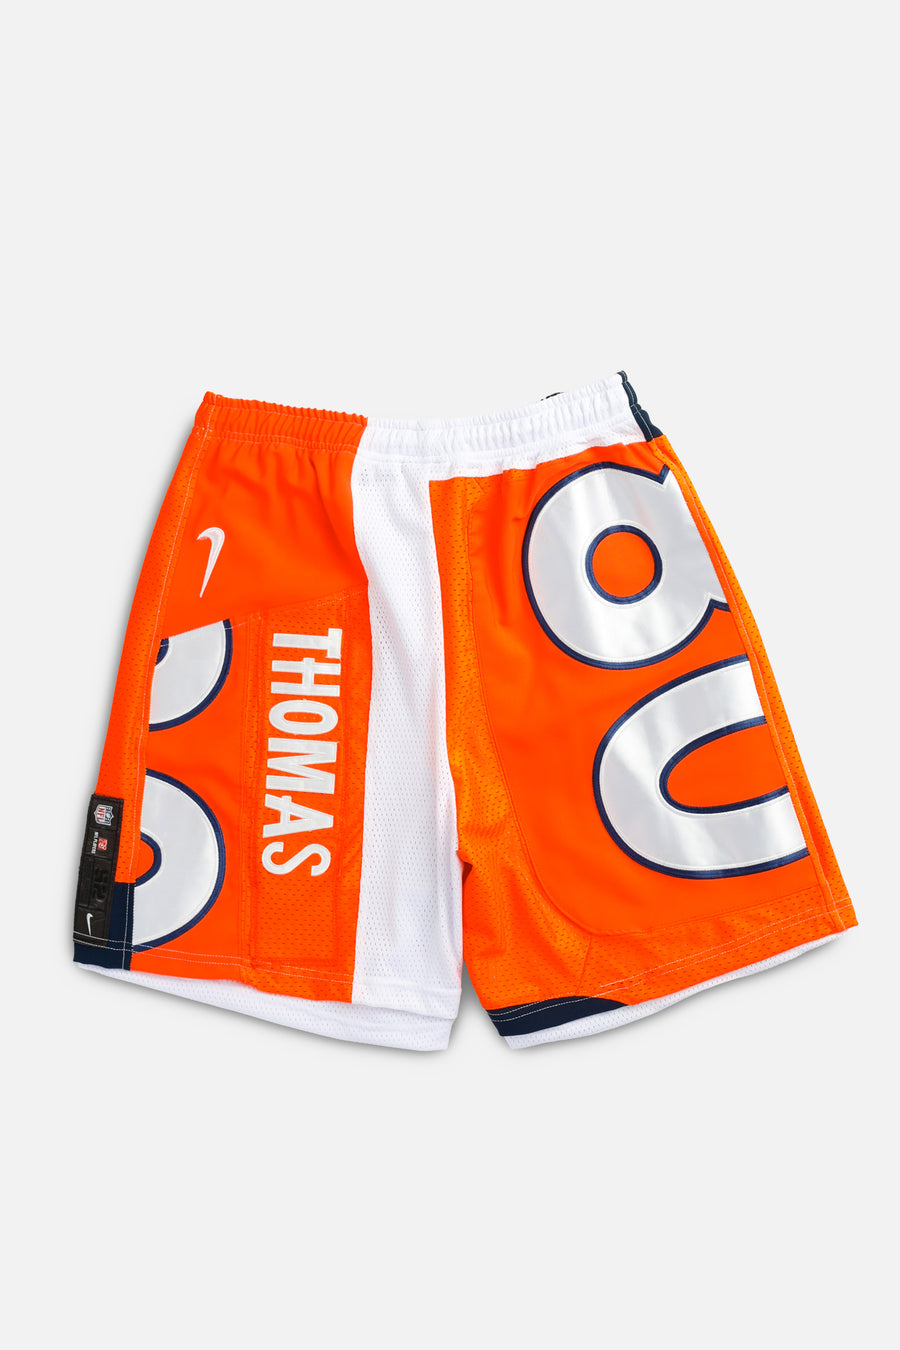 Unisex Rework Denver Broncos NFL Jersey Shorts - M